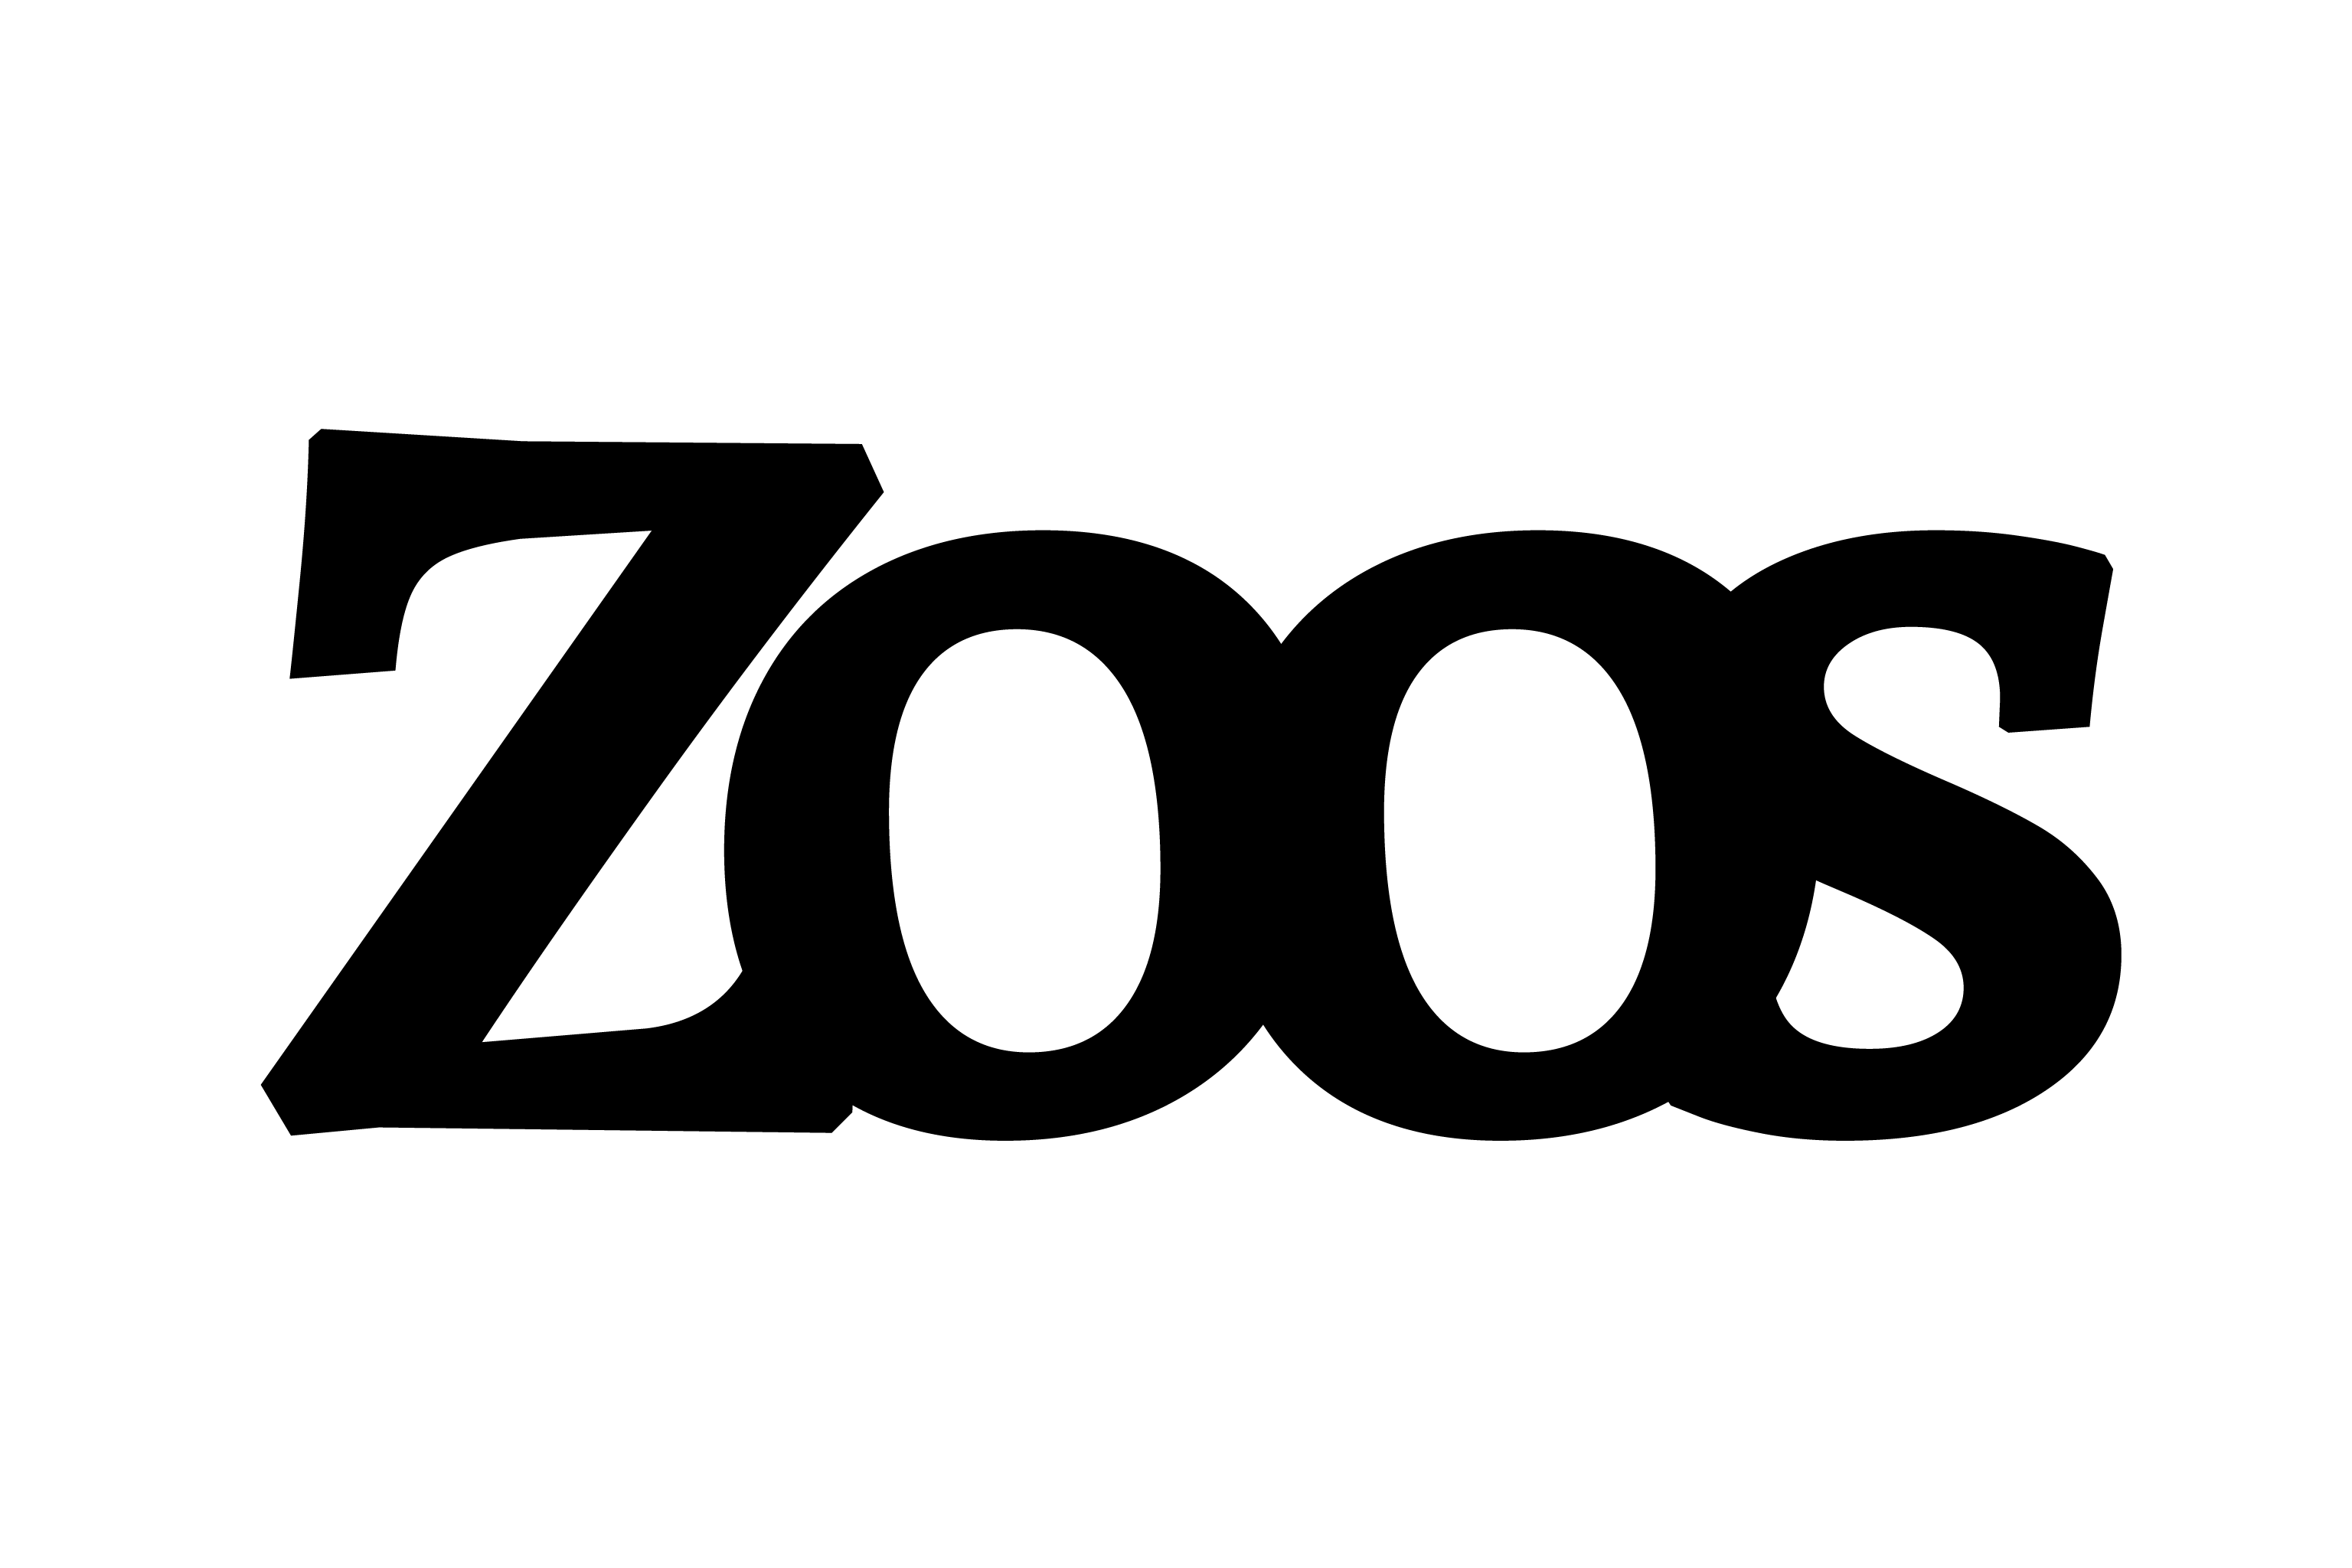 zoos-logo-monochrome-black